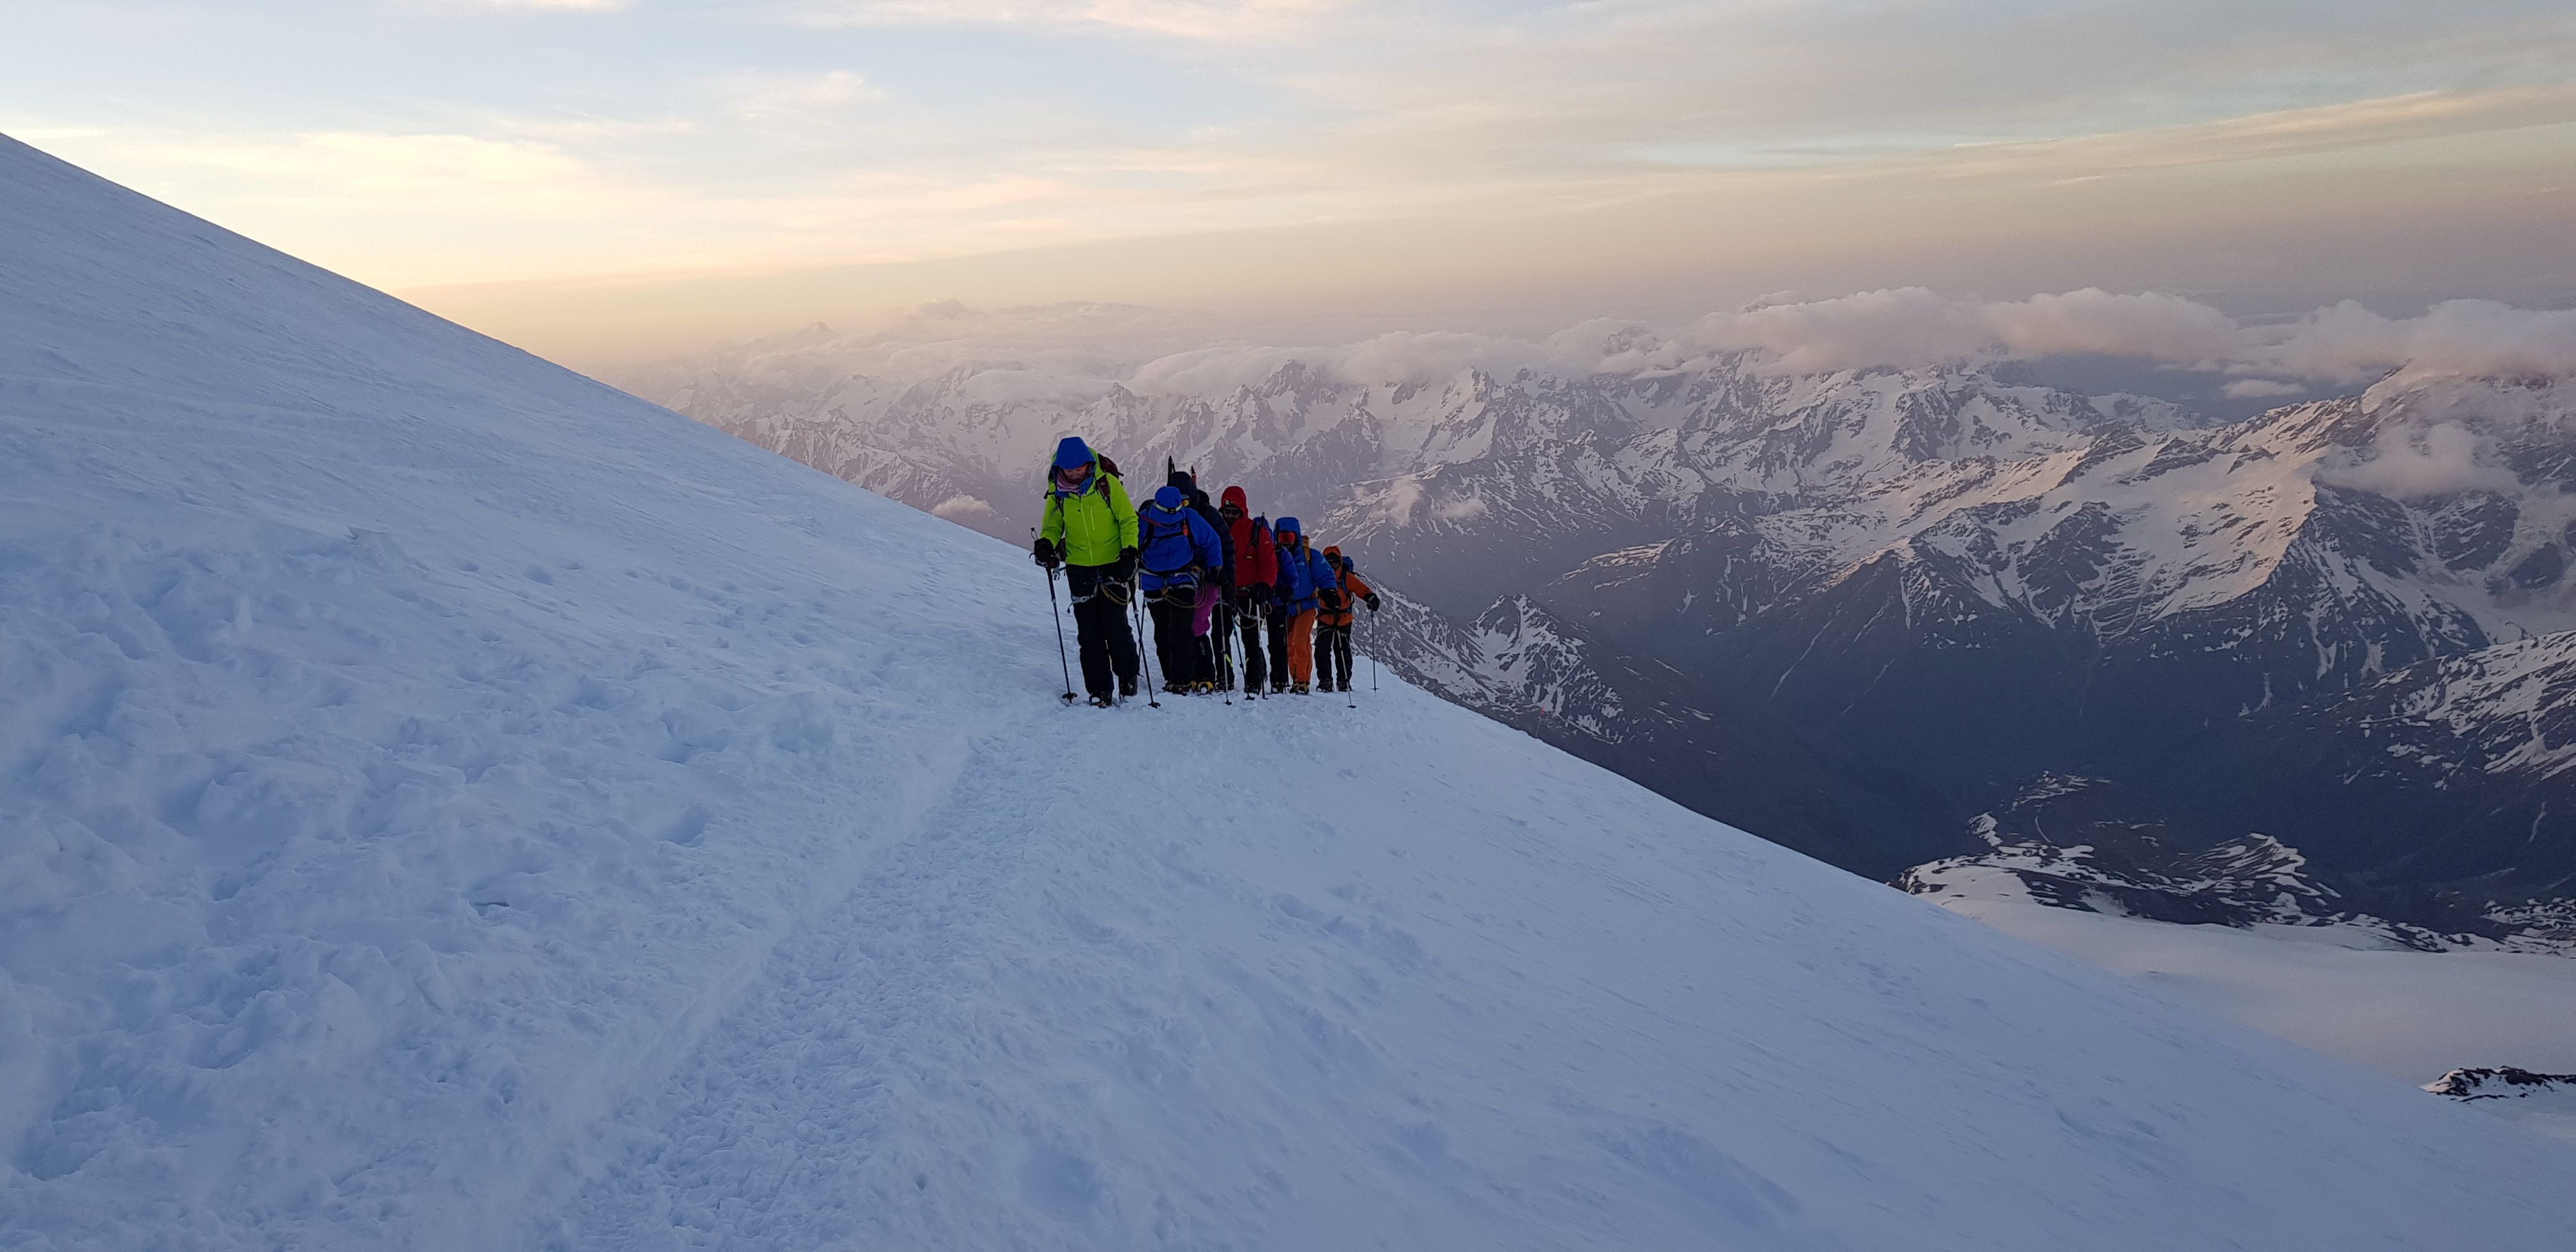 11 июня 2019 года. Группа столичных альпинистов во время восхождения на Эльбрус. Фото из личного архива